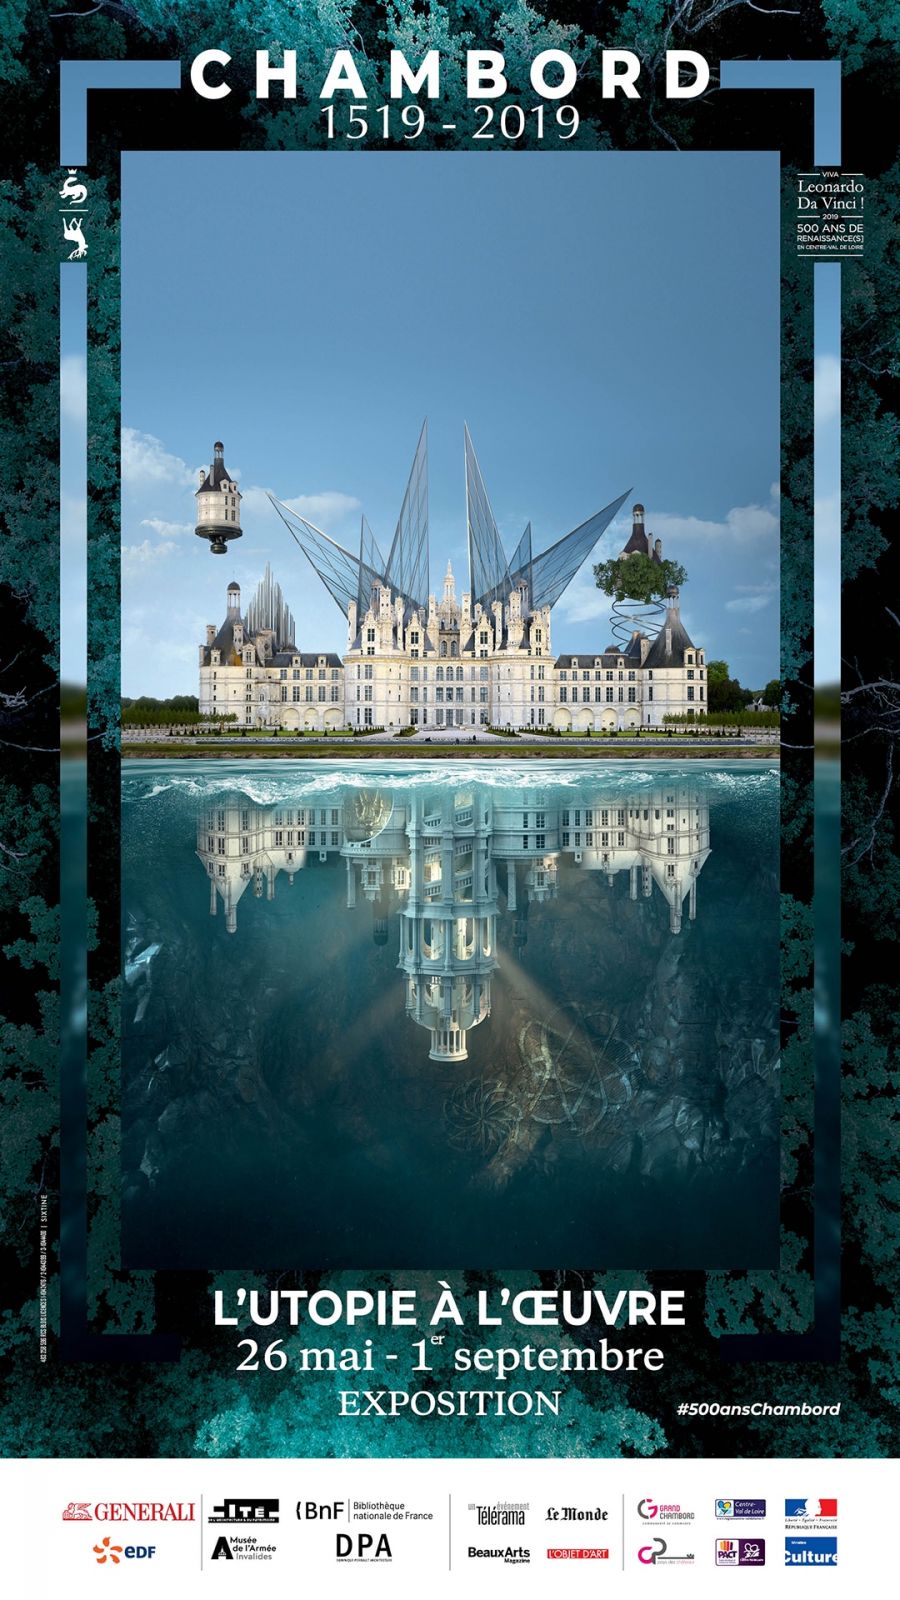 Exposition Utopie à l'oeuvre présentée du 26 mai au 1er septembre 2019 au Château de Chambord